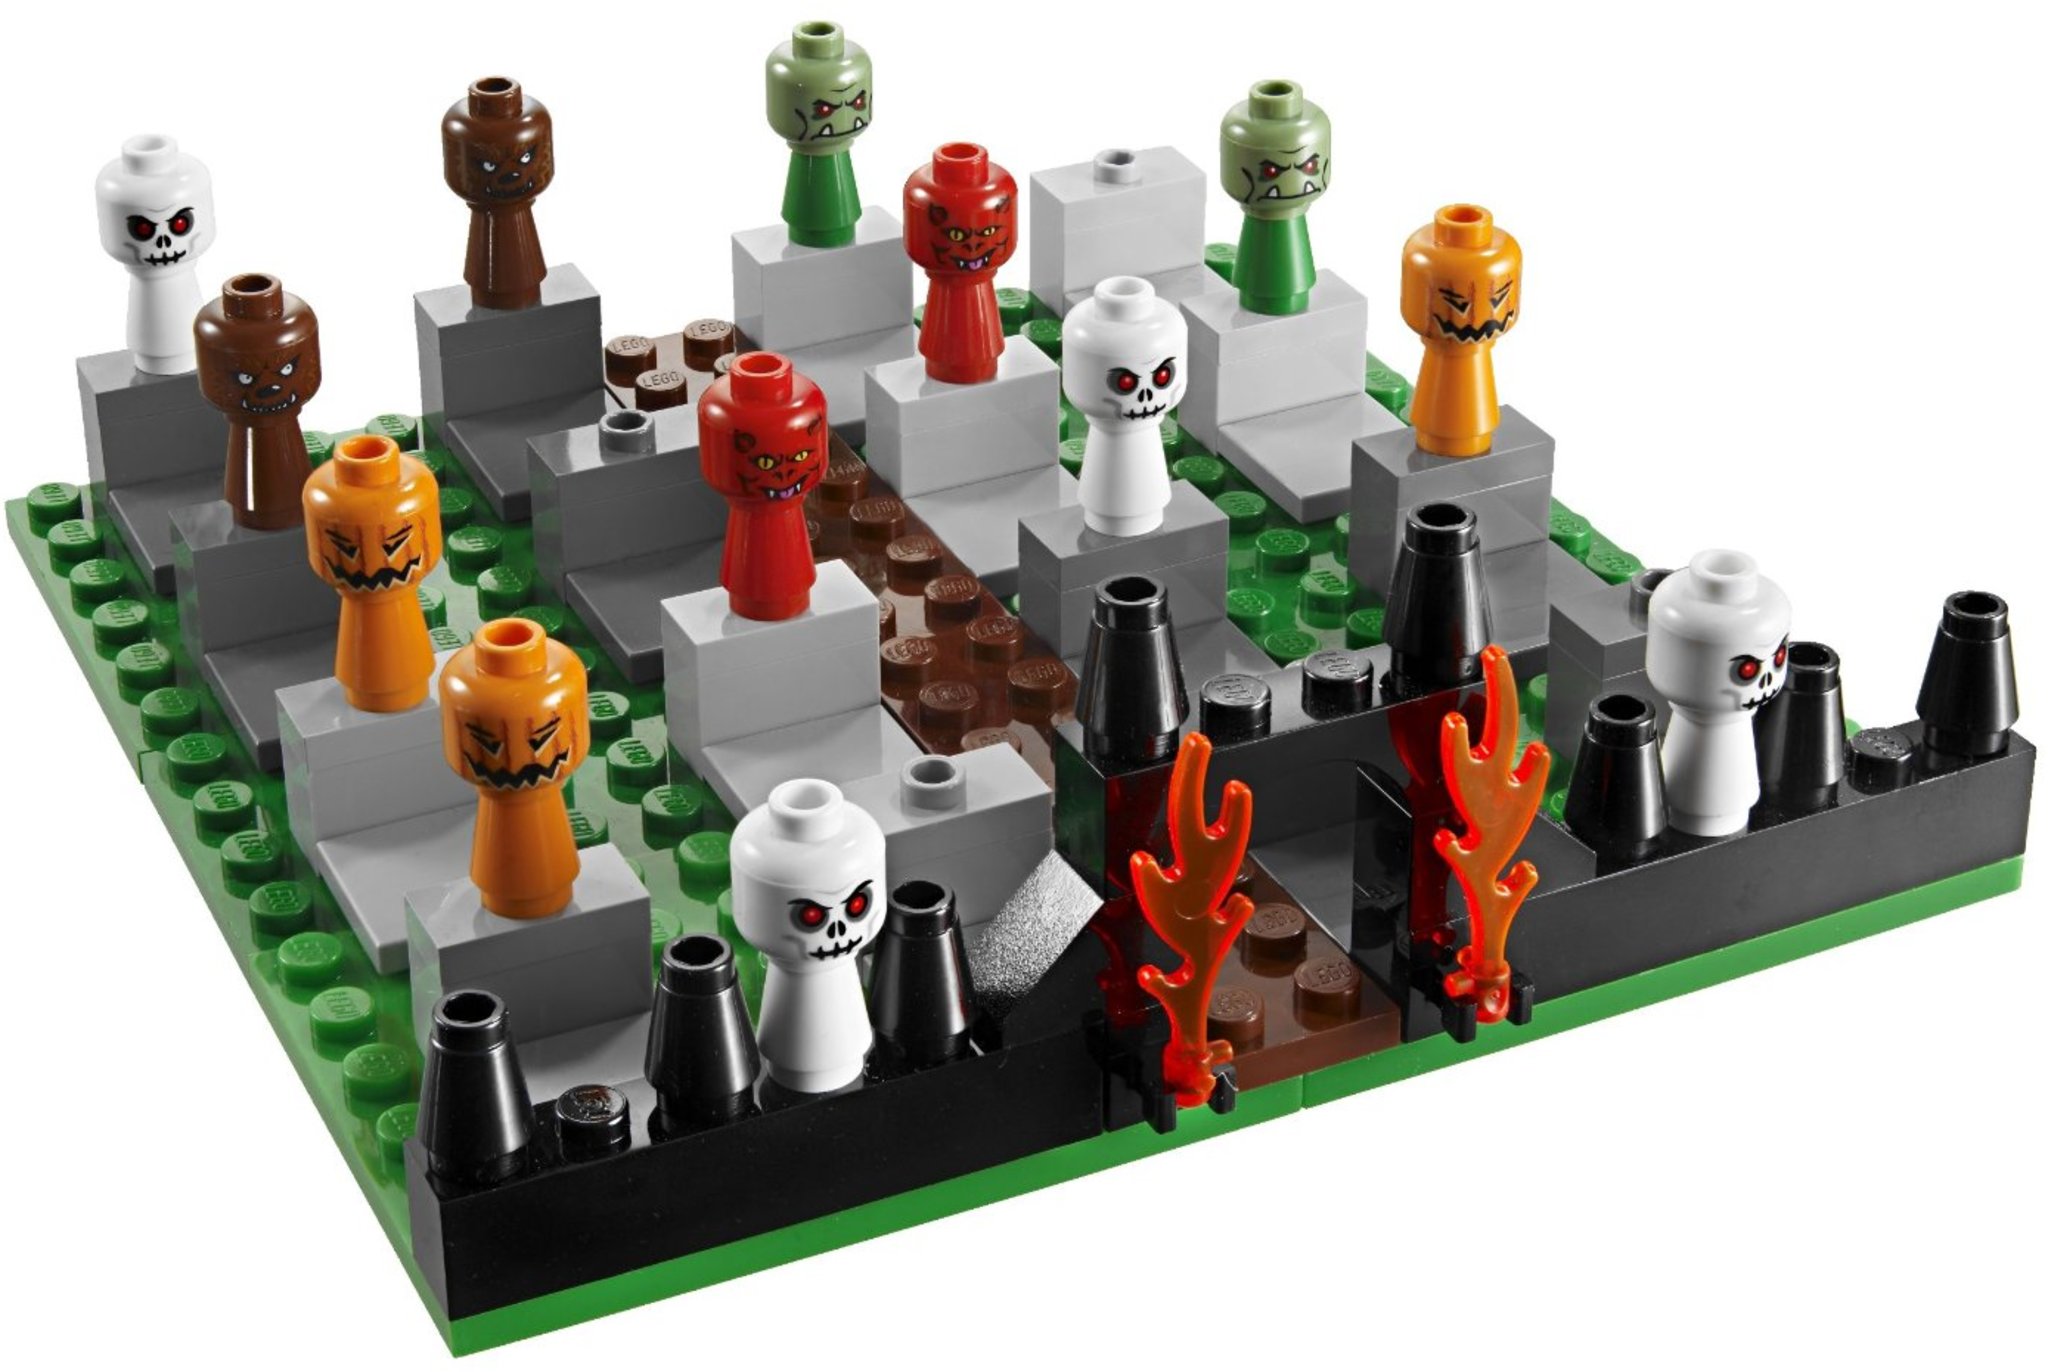 LEGO Games 3837 - Monster 4 | Mattonito